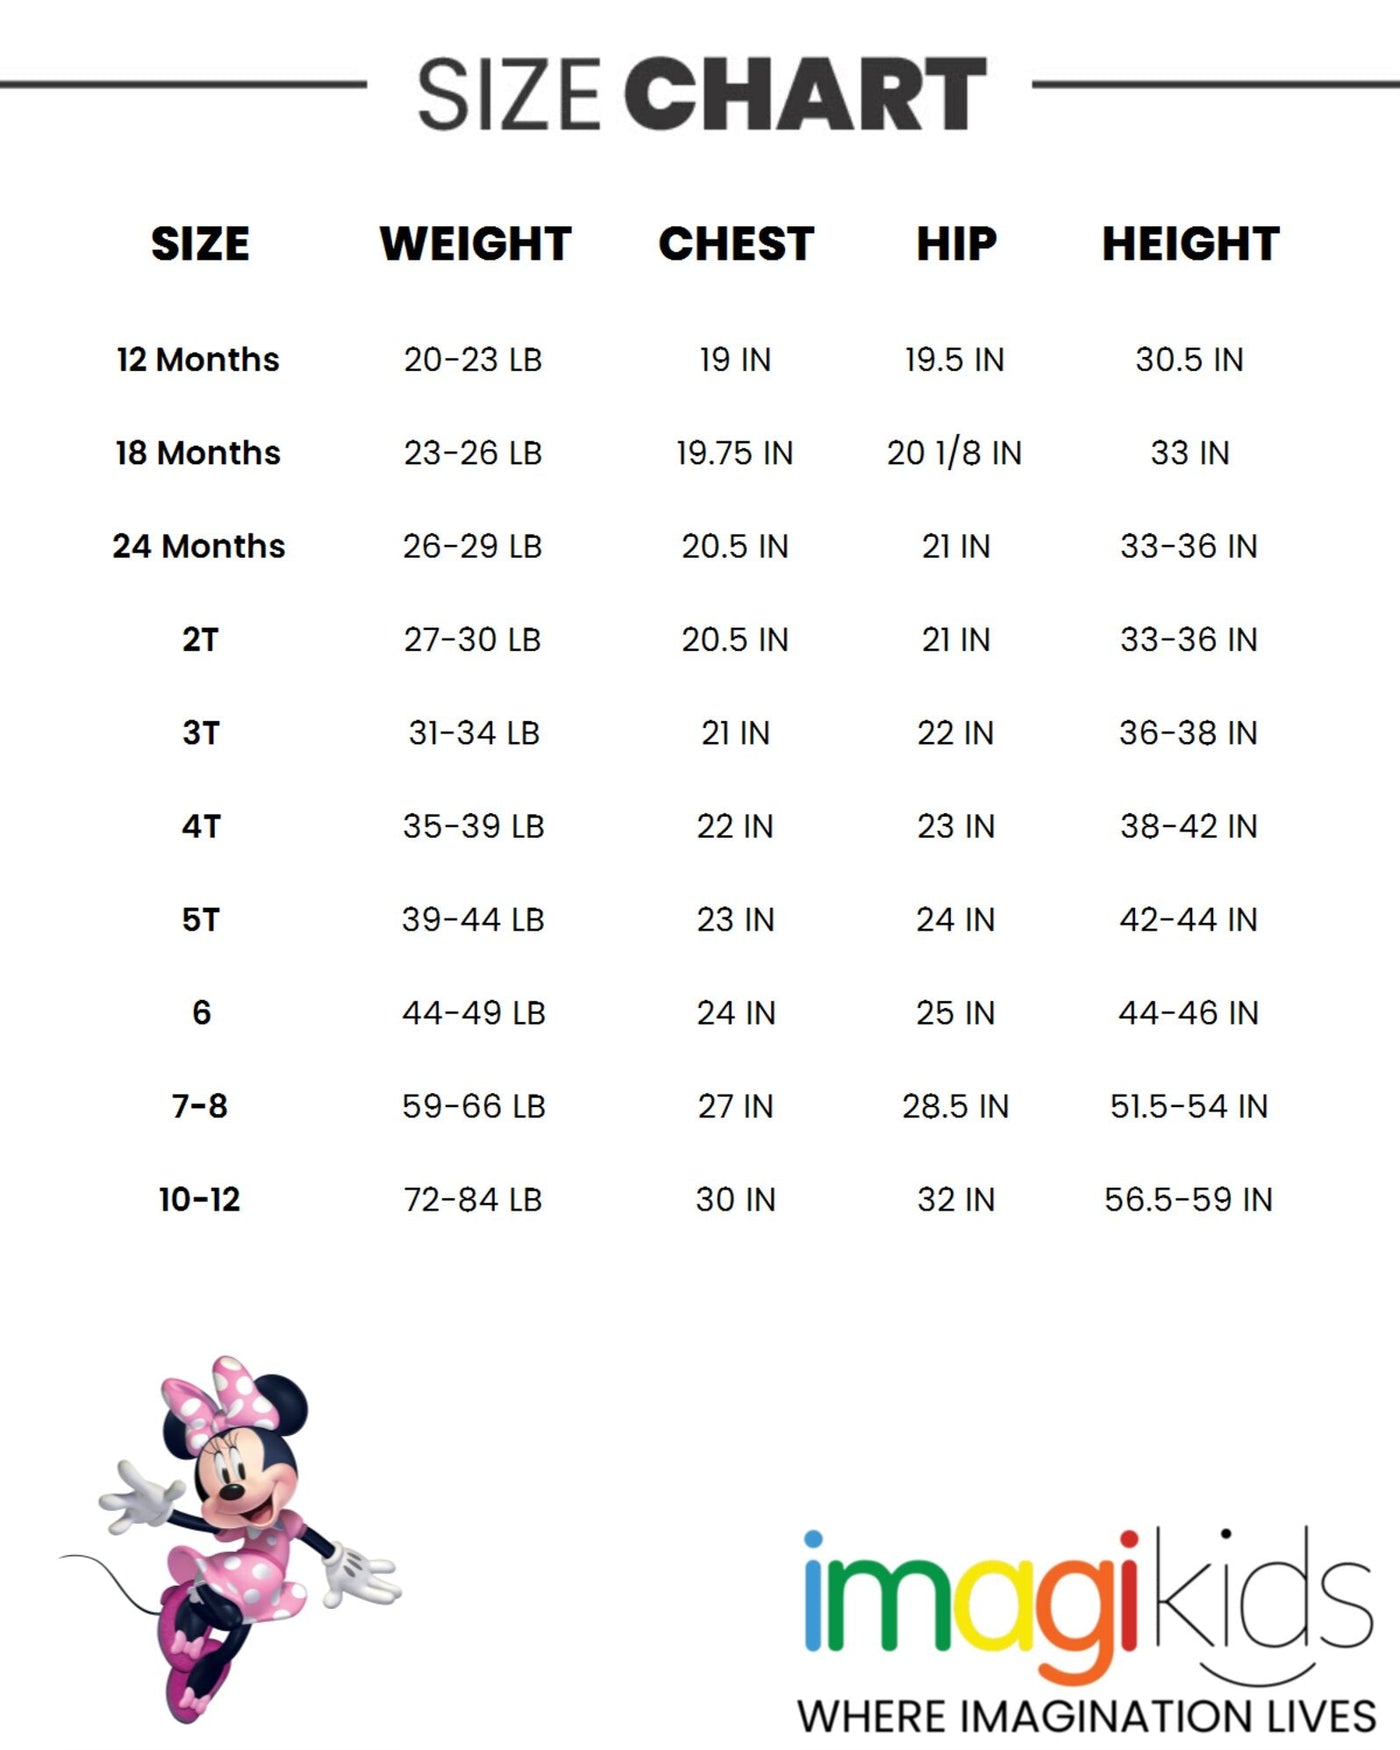 Disney Minnie Mouse Vest T-Shirt and Leggings 3 Piece Outfit Set - imagikids